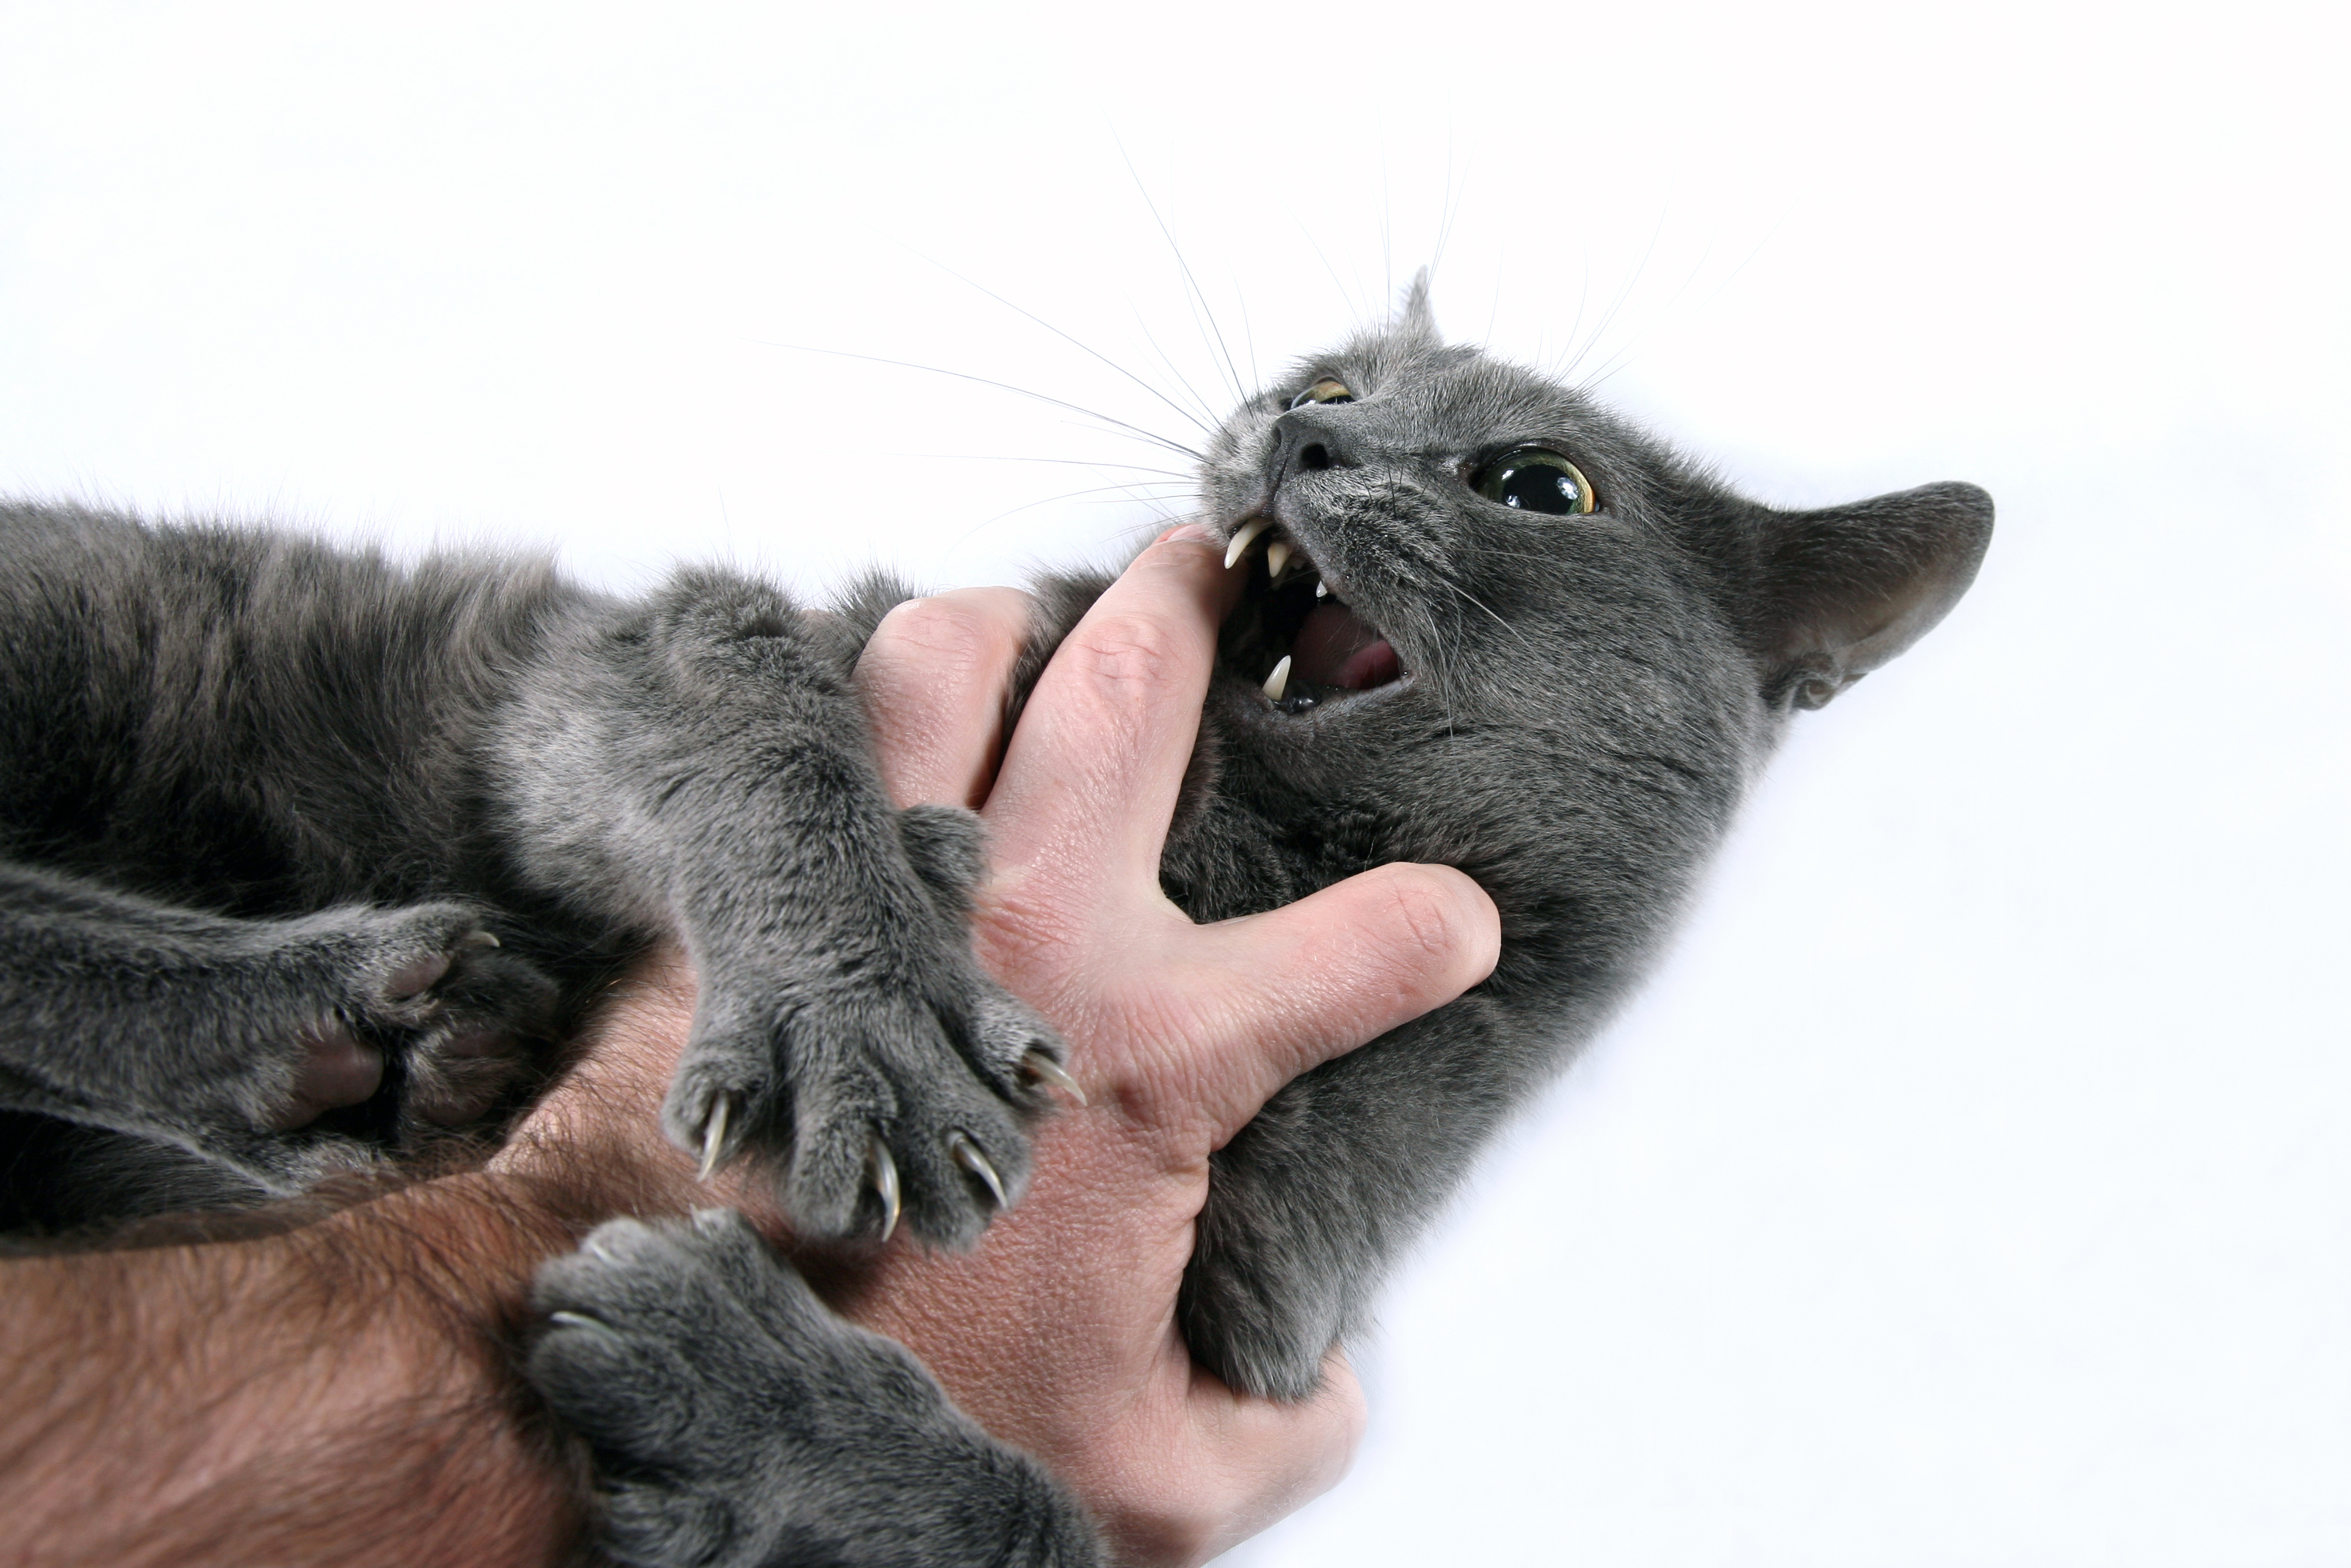 Letselschade door een kat: wie is aansprakelijk?